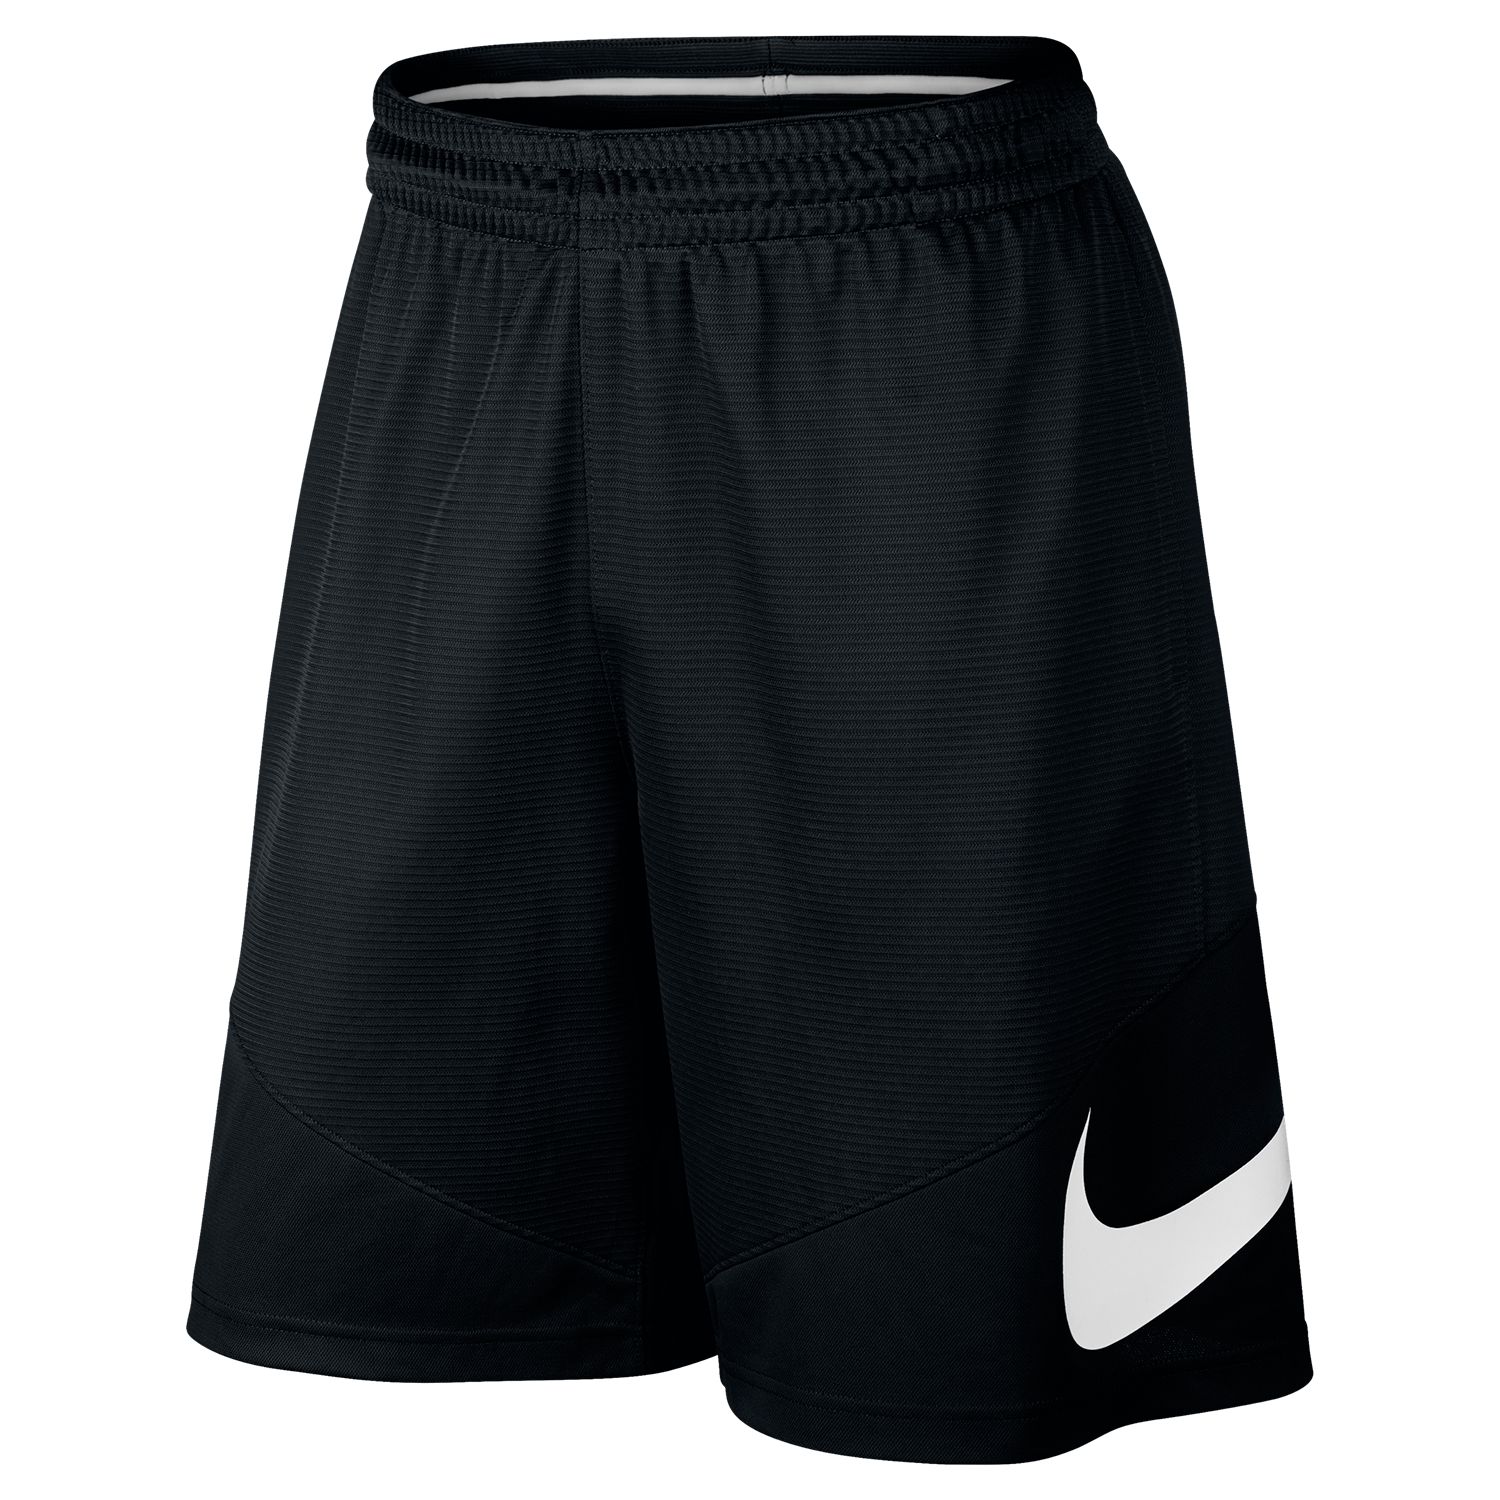 Big \u0026 Tall Nike Dri-FIT Basketball Shorts